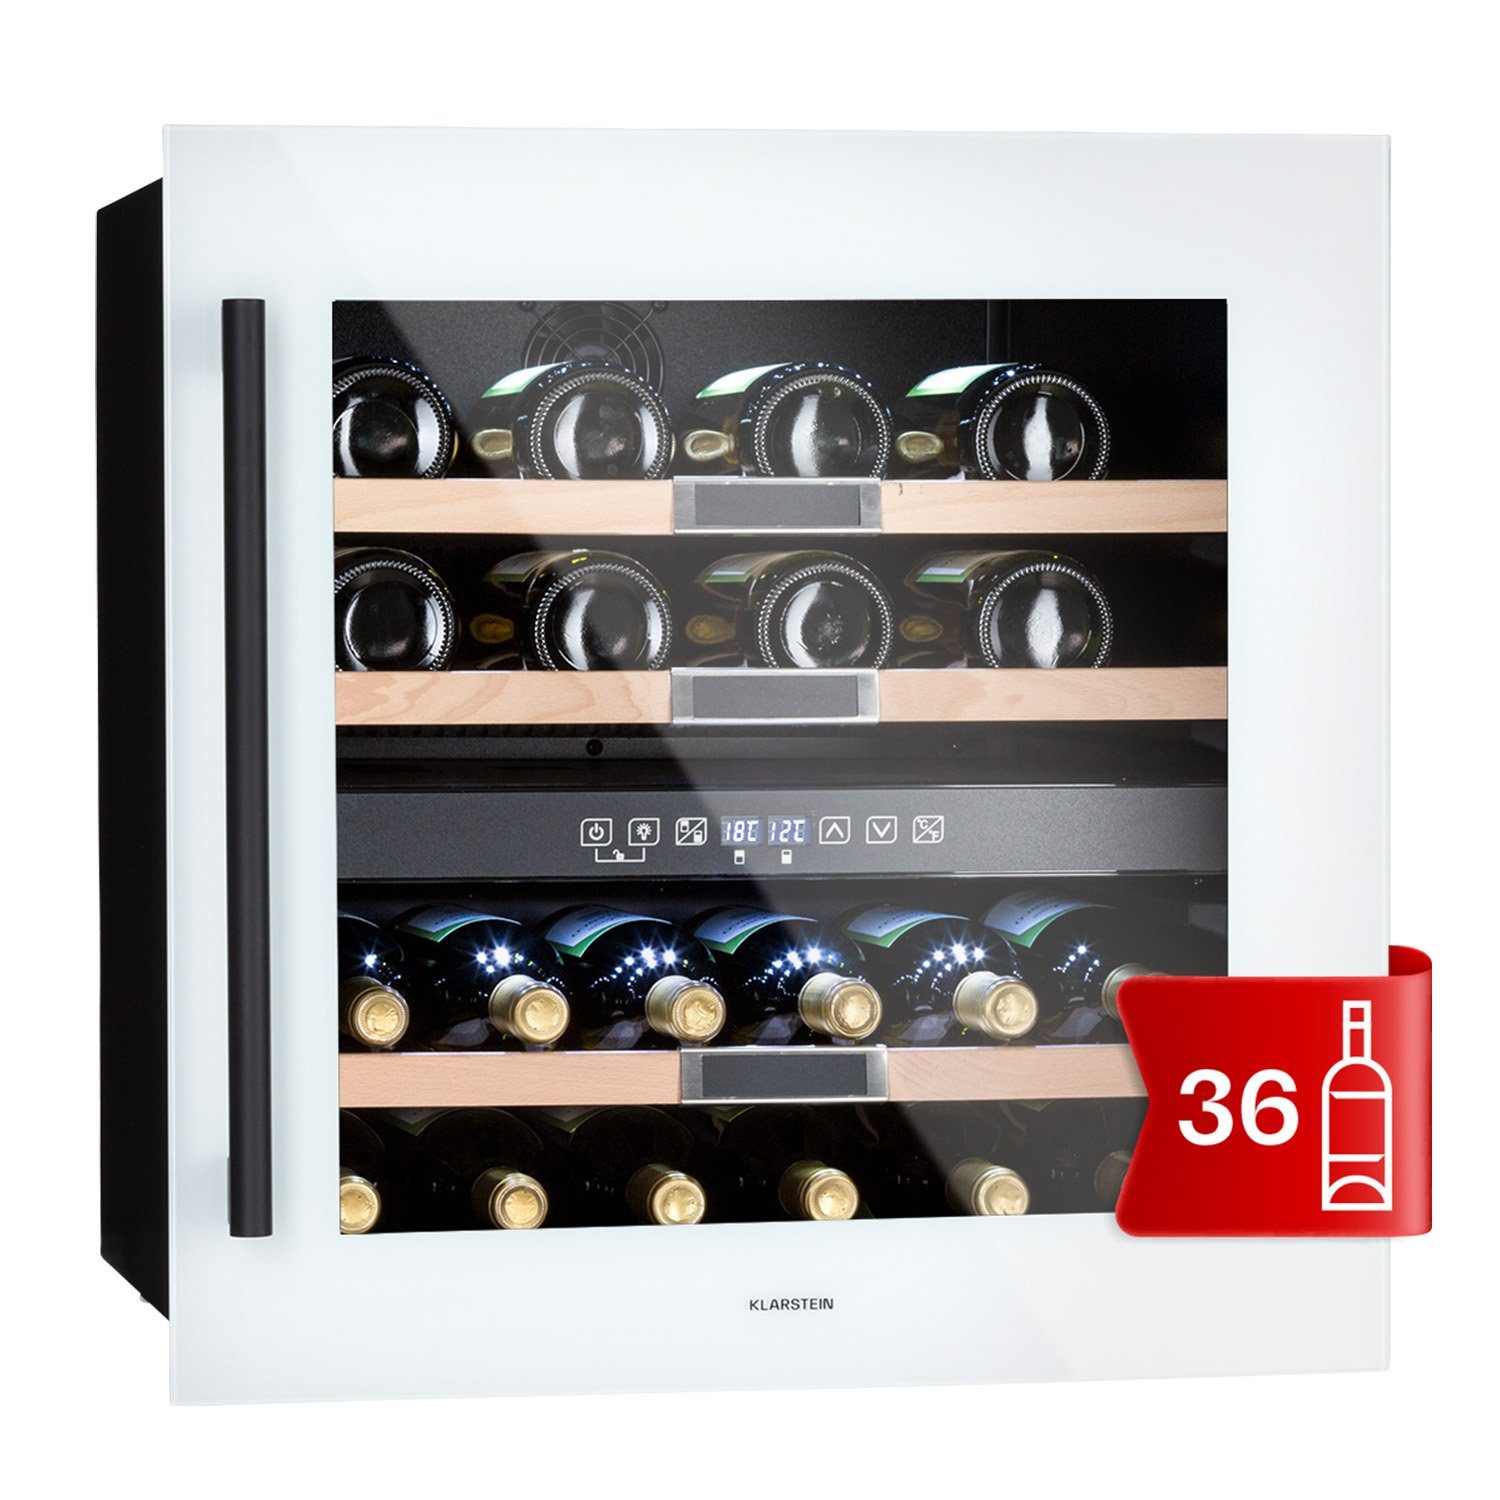 Klarstein Weinkühlschrank Vinsider 36 Quartz Edition, für 36 Standardflaschen á 0,75l,Wein Flaschenkühlschrank Weintemperierschrank Weinschrank Kühlschrank Quartz | Quartz